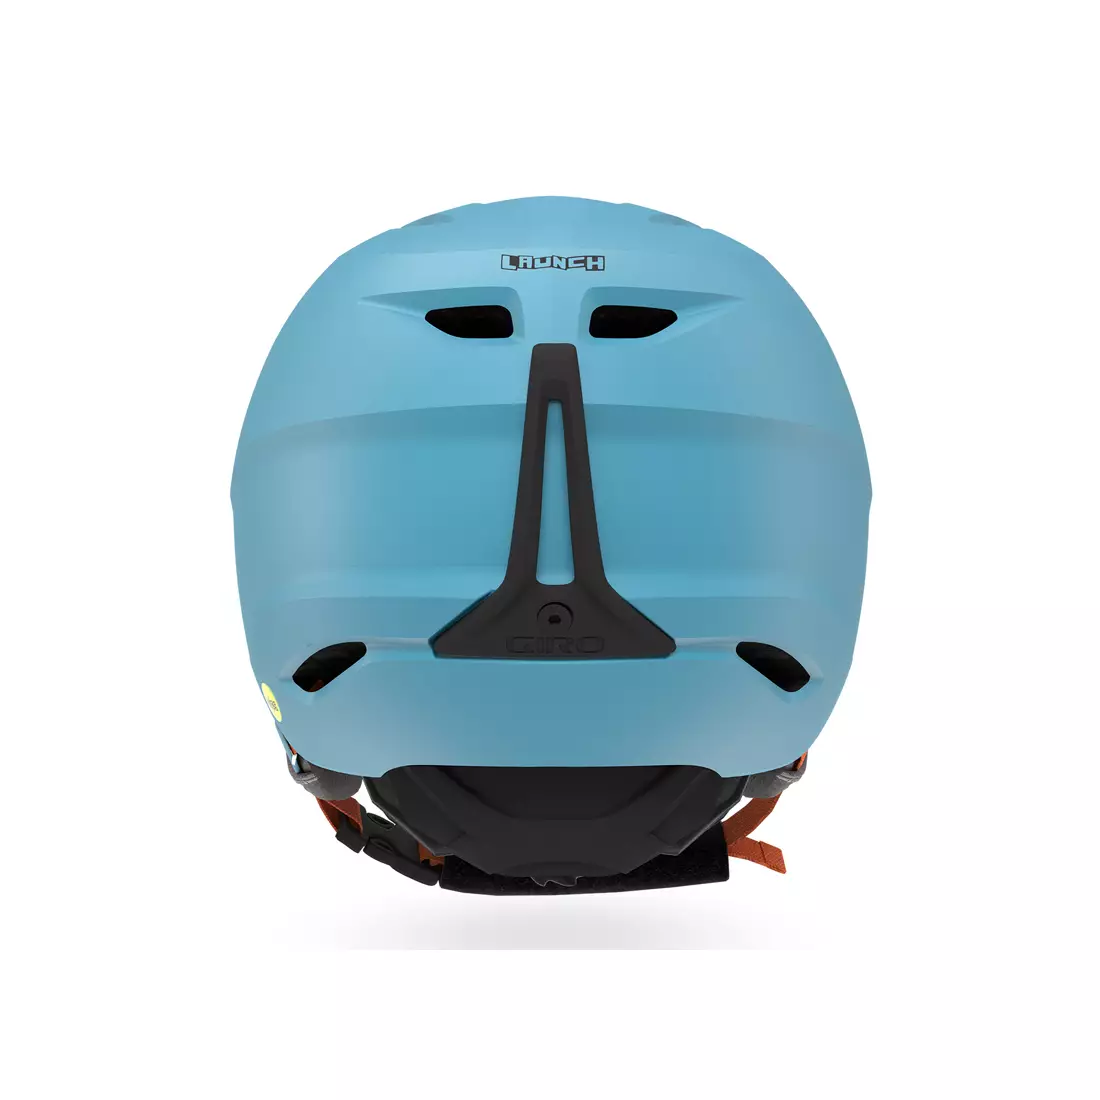 Ski/snowboard winter helmet GIRO LAUNCH metallic iceberg 